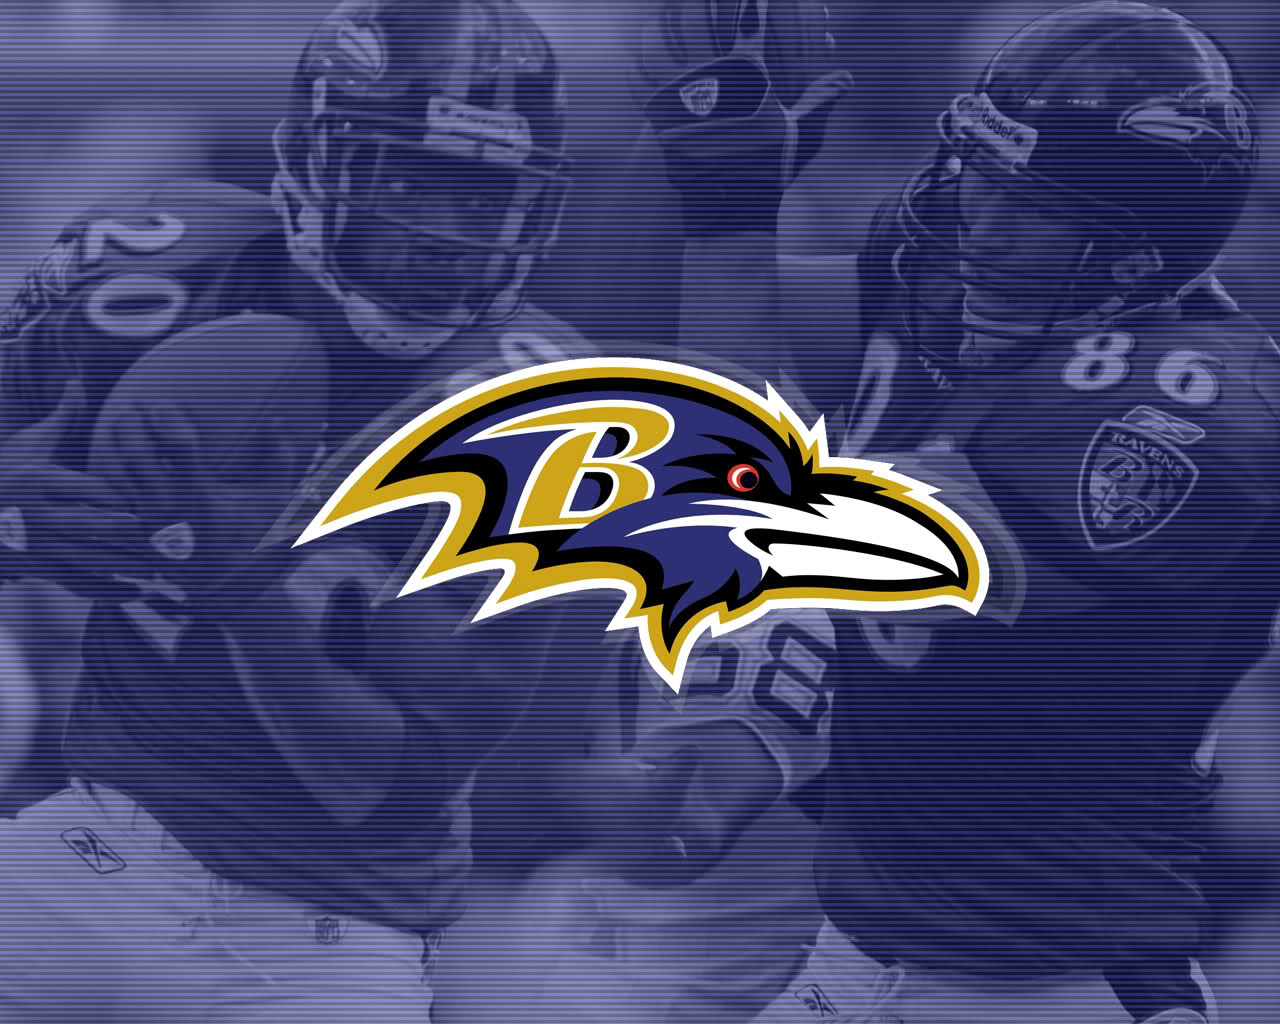  Baltimore Ravens wallpaper desktop image Baltimore Ravens wallpapers 1280x1024